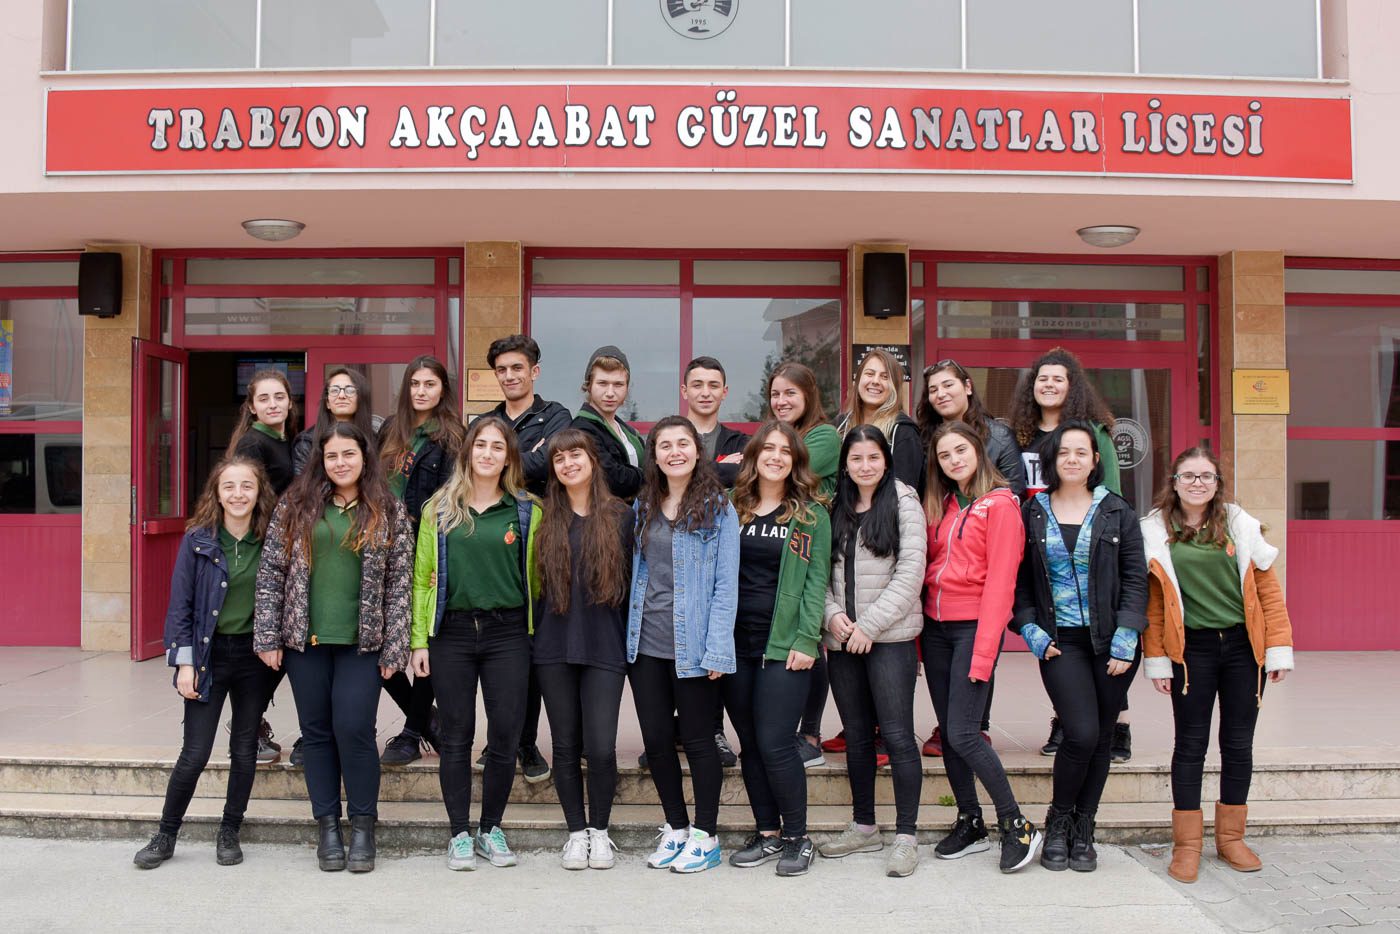 Trabzon Akçaabat Güzel Sanatlar Lisesi, mezuniyet, trabzon